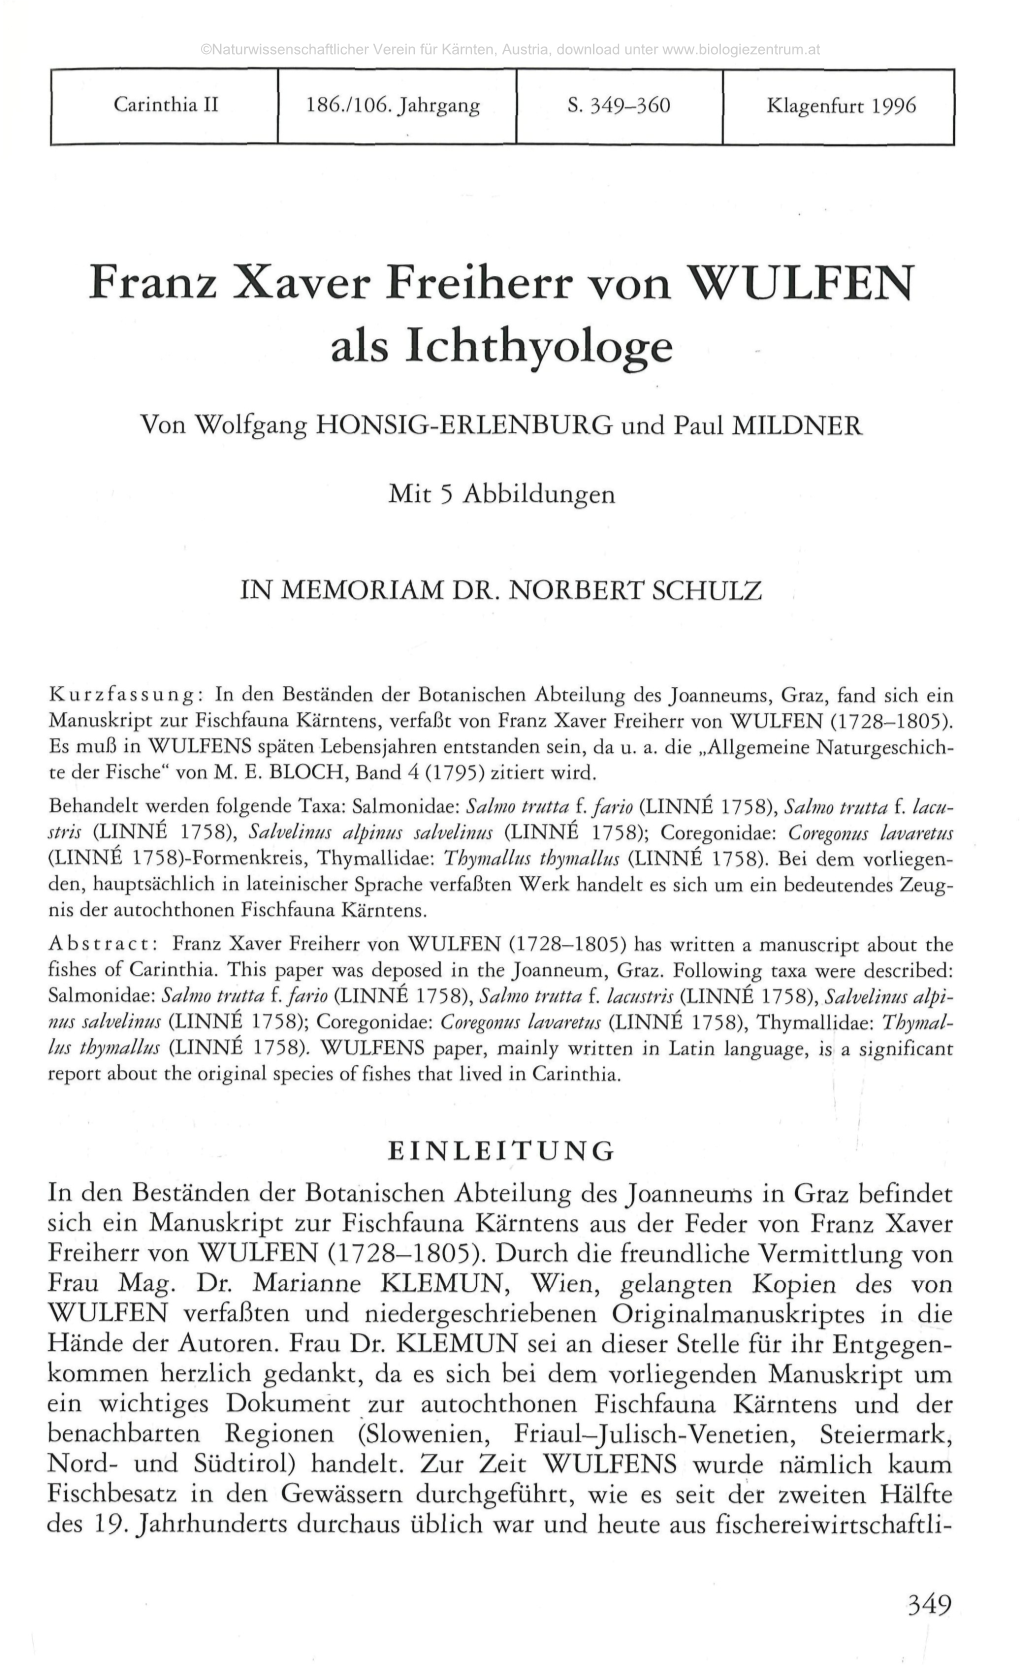 Franz Xaver Freiherr Von WULFEN Als Ichthyologe